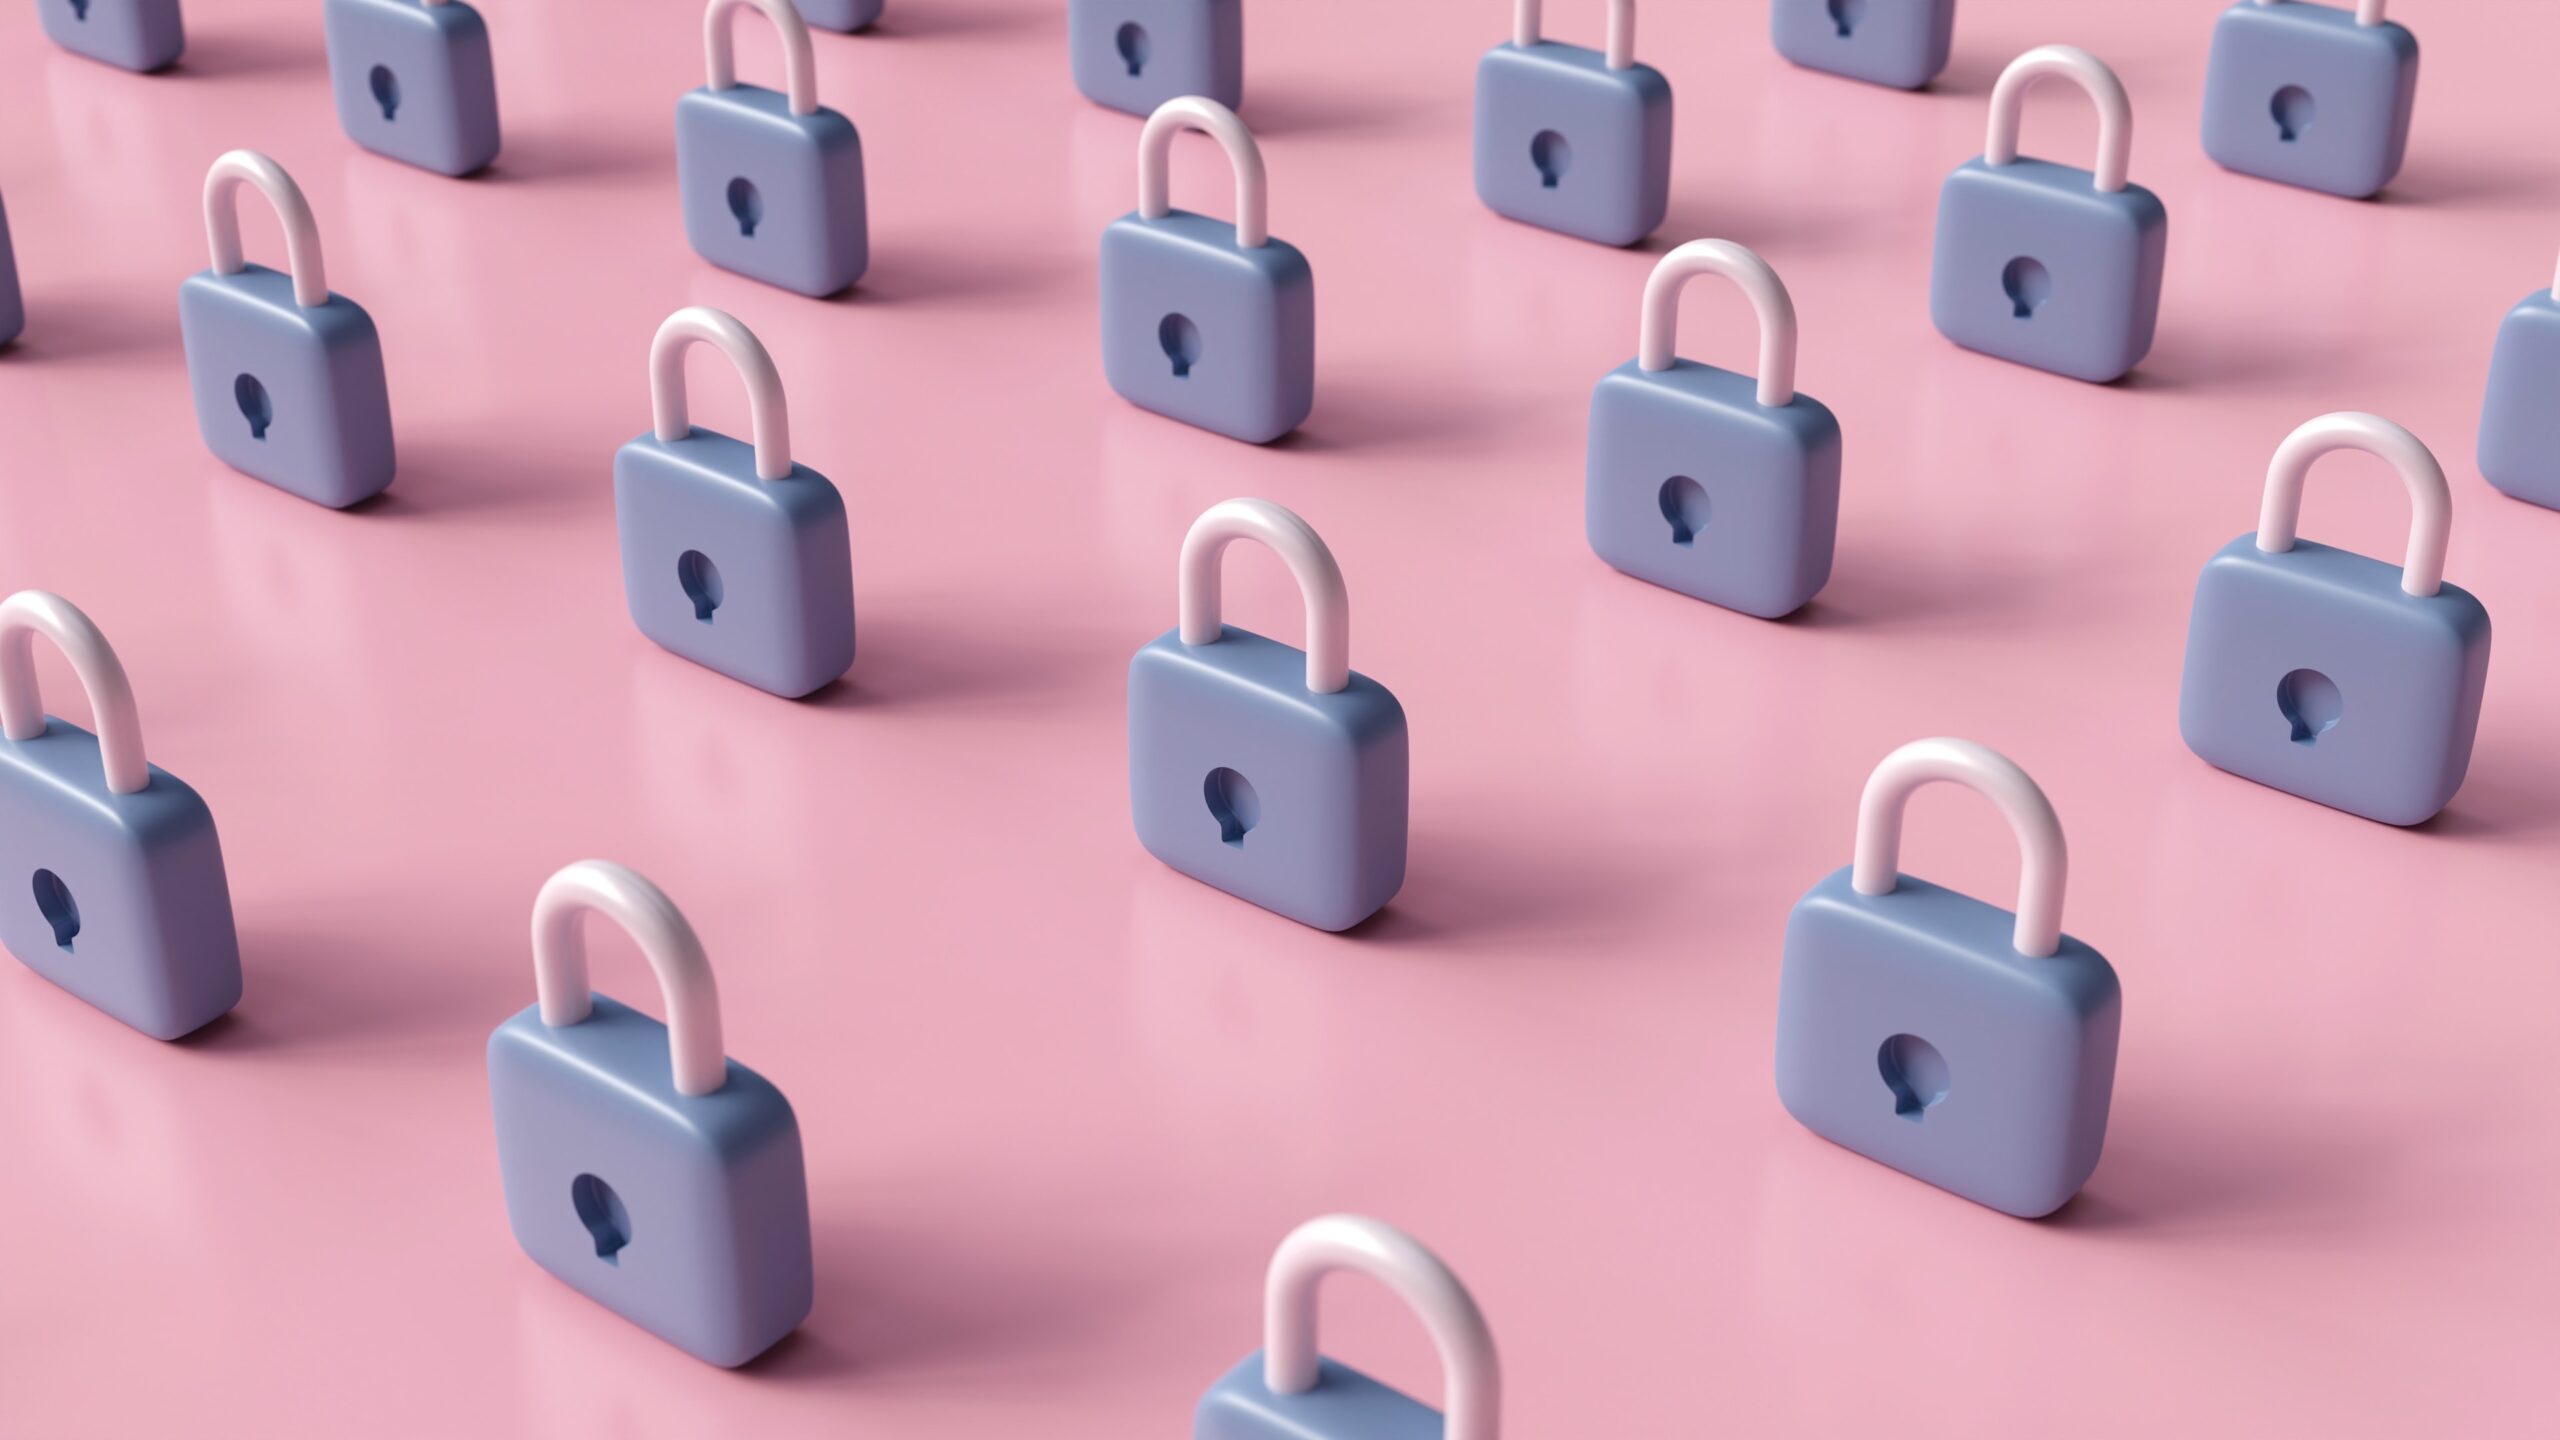 field of secure locks